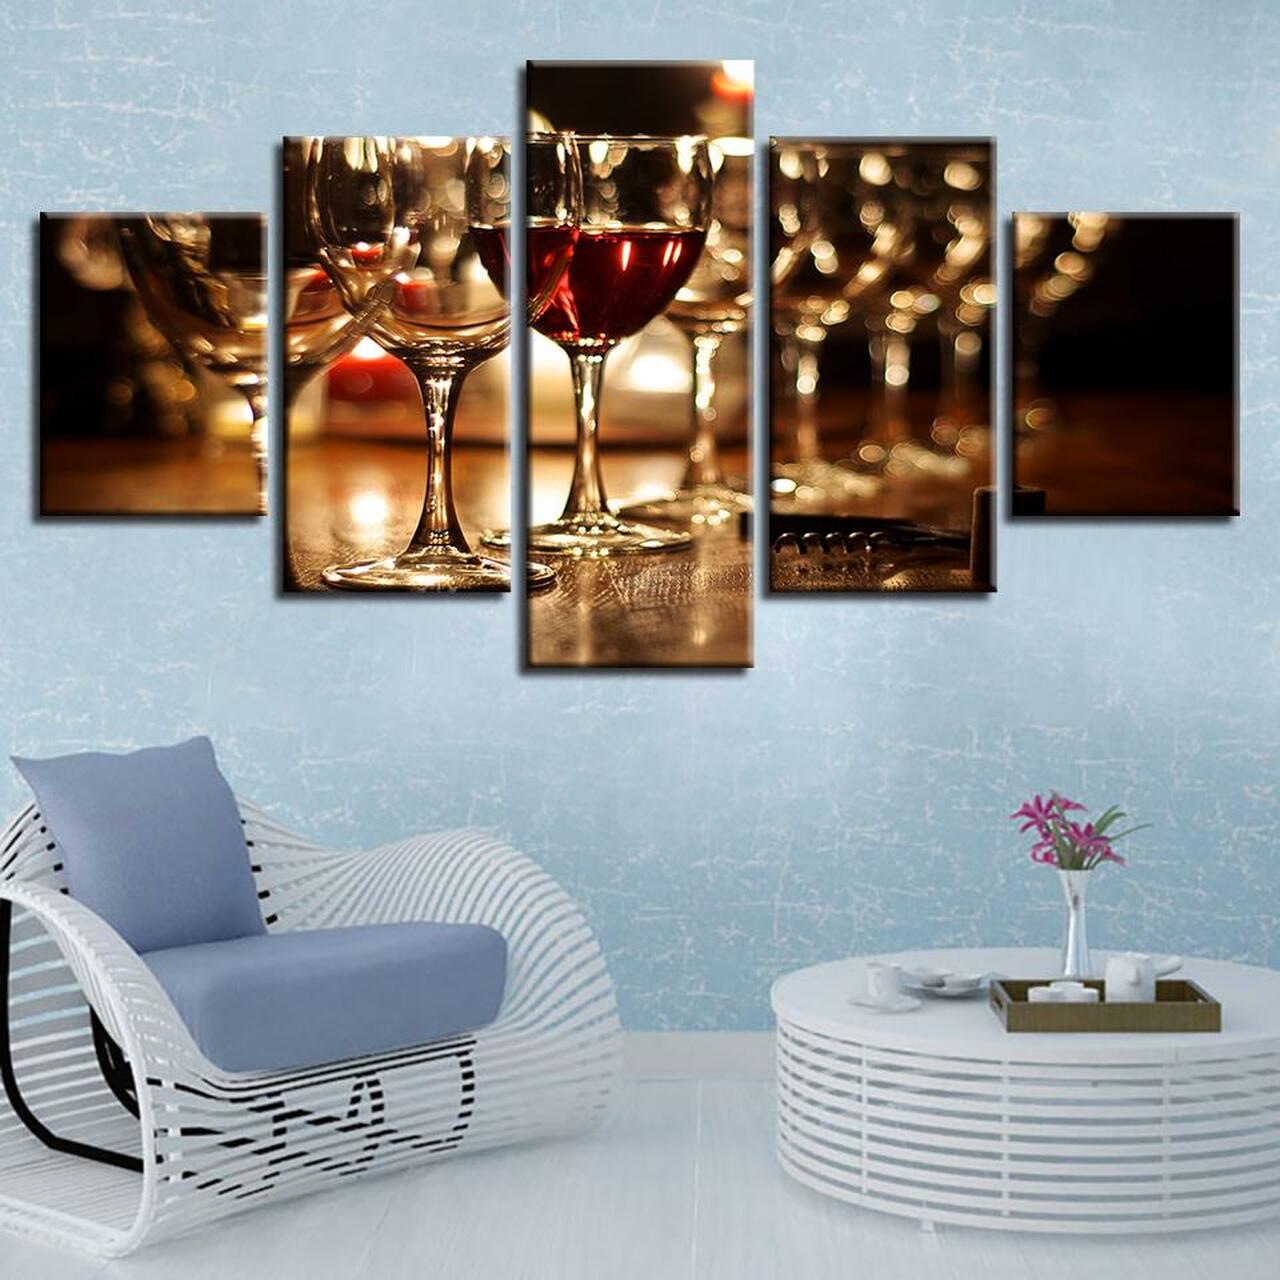 red wine glasses 5 pices peinture sur toile impression sur toile toile art pour la dcoration intrieureegzki